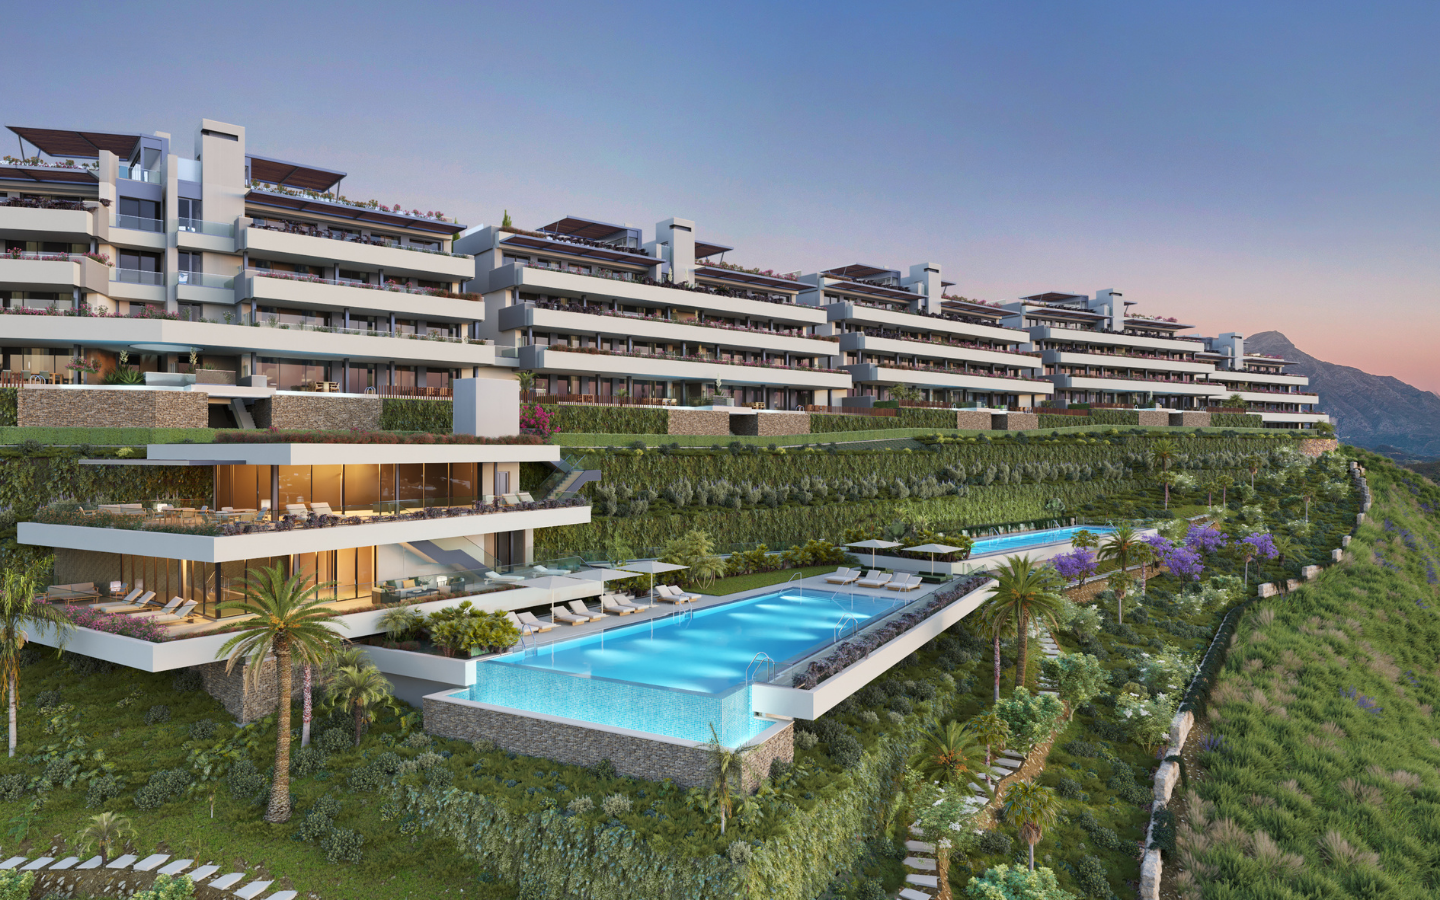 Penthouse de 3 chambres - Costa del Sol à seulement 10 min de Marbella 